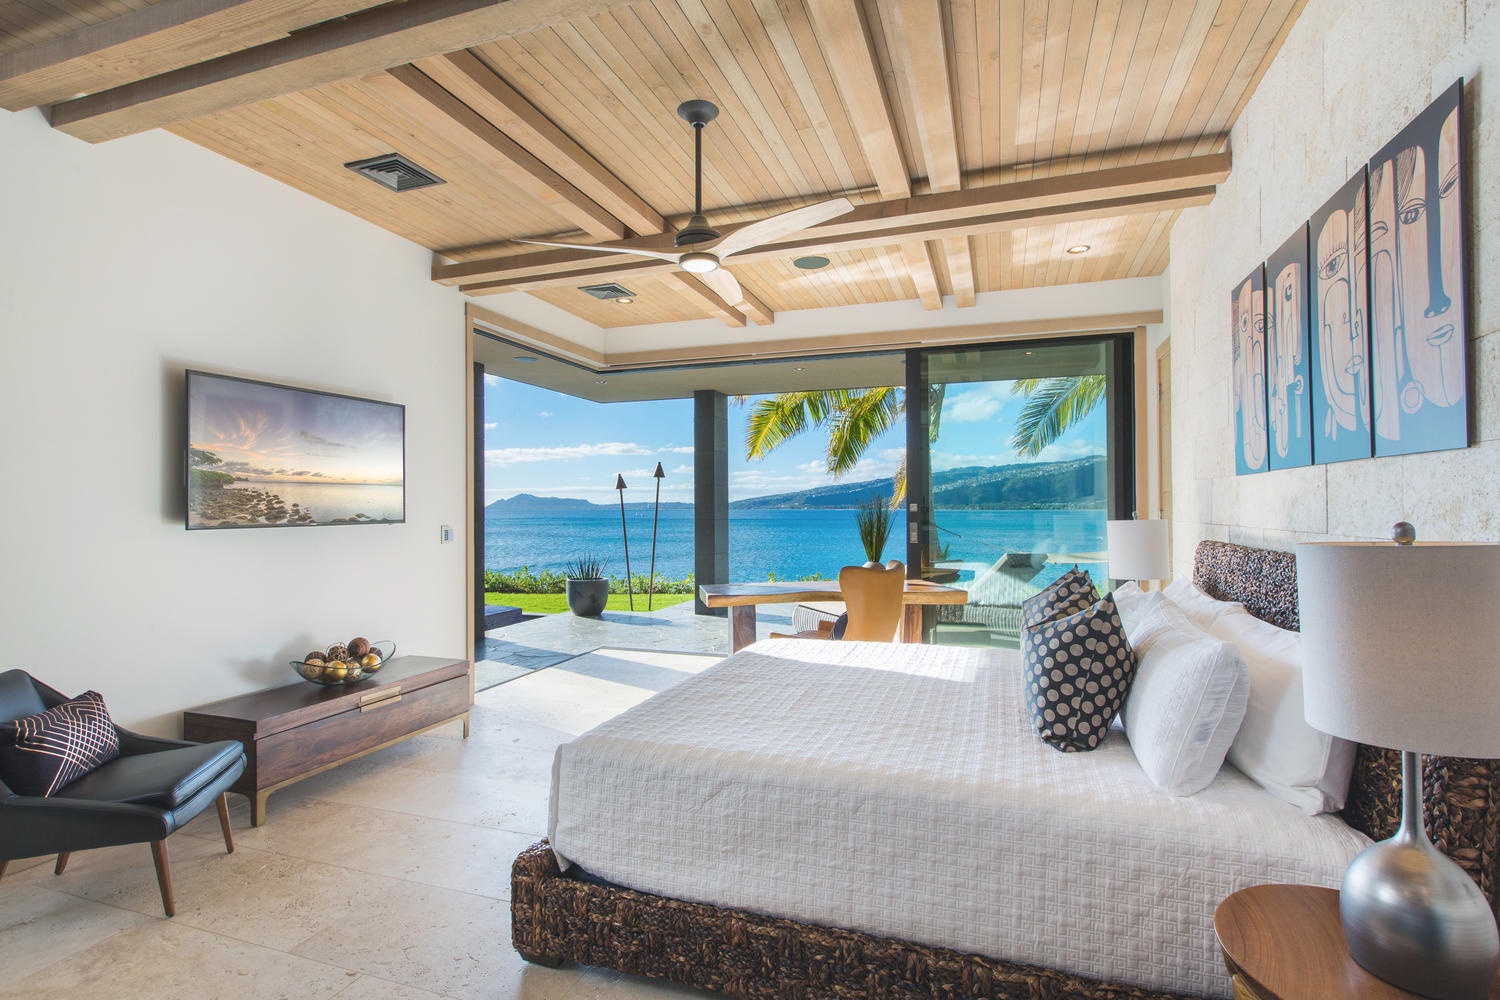 Honolulu Vacation Rentals, Ocean House - Downstairs bedroom.